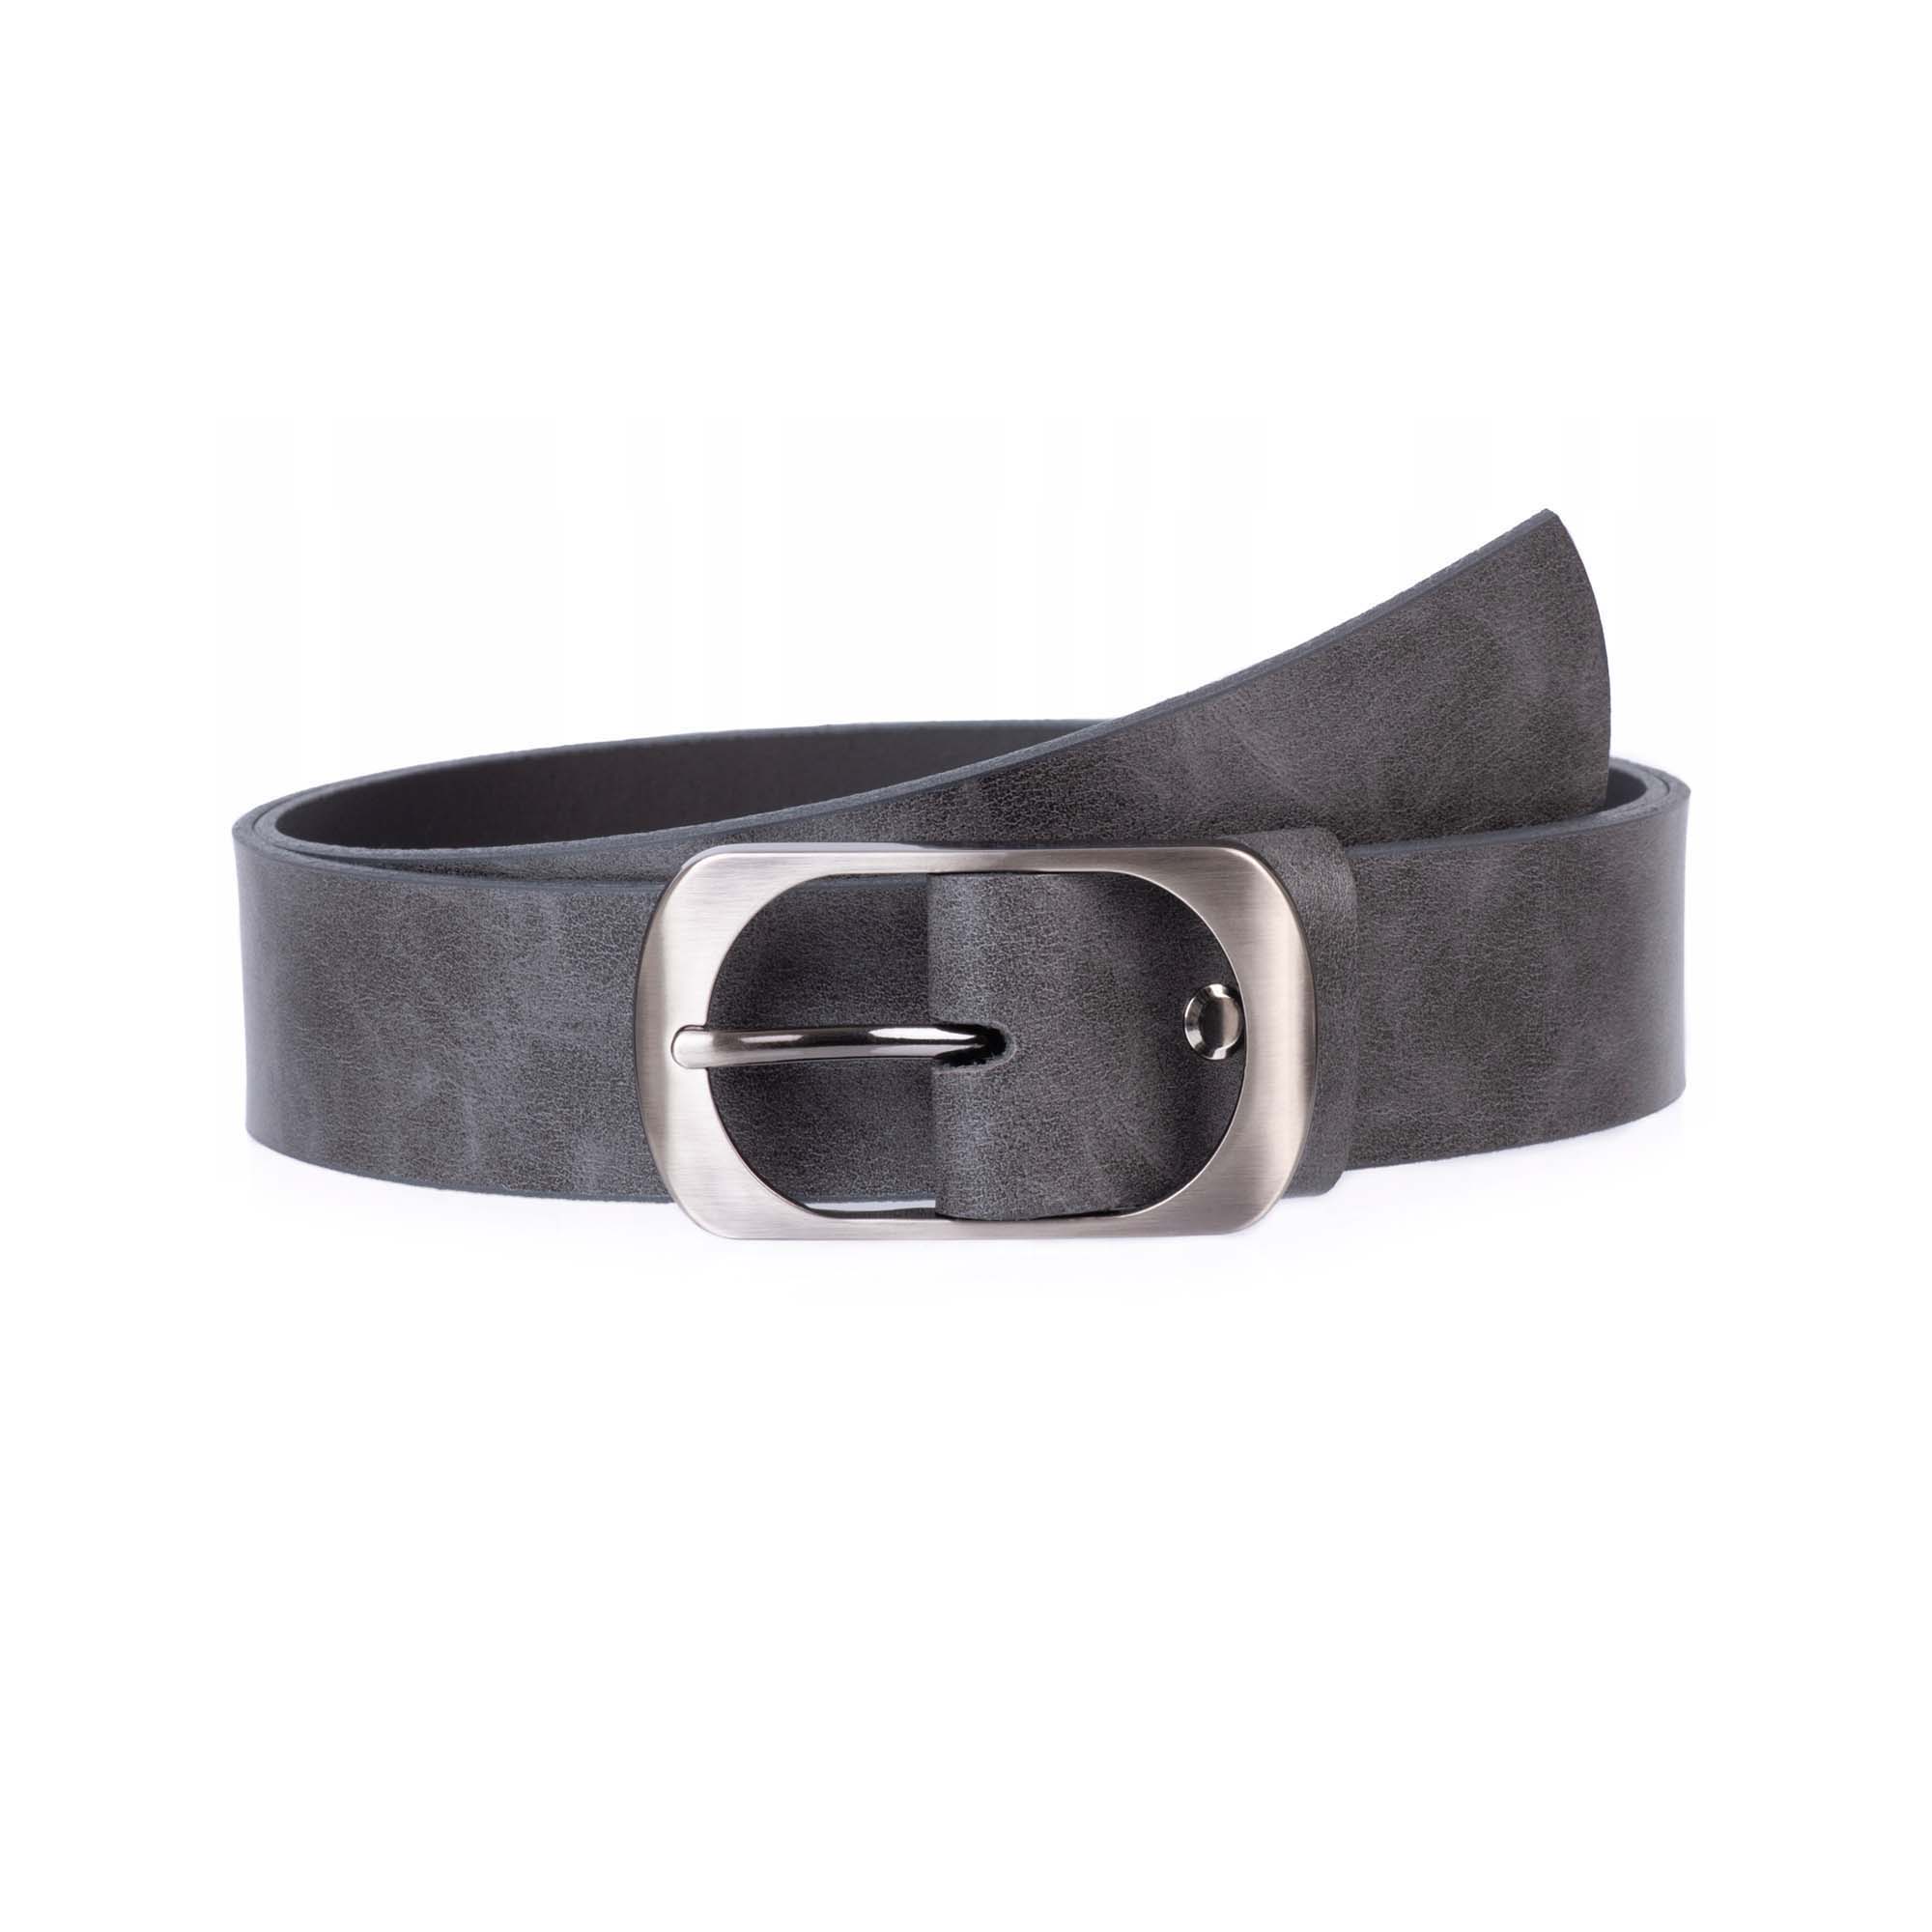 Buy Womens Belt Dark Gray Leather Wide 4.0 Cm - LeatherBeltsOnline.com